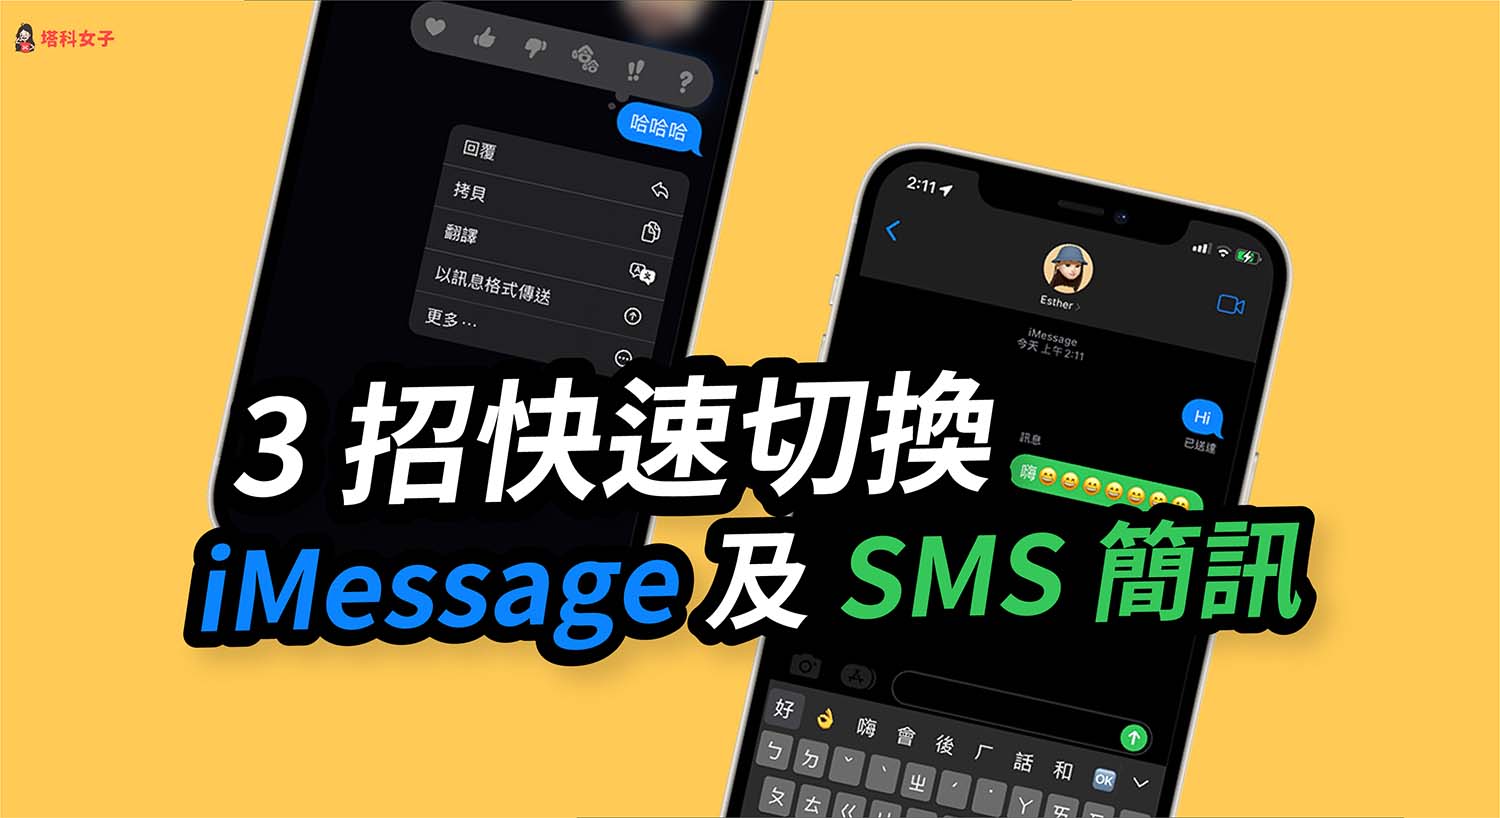 iMessage 簡訊切換教學，3 招強制 iPhone 傳送 SMS 簡訊